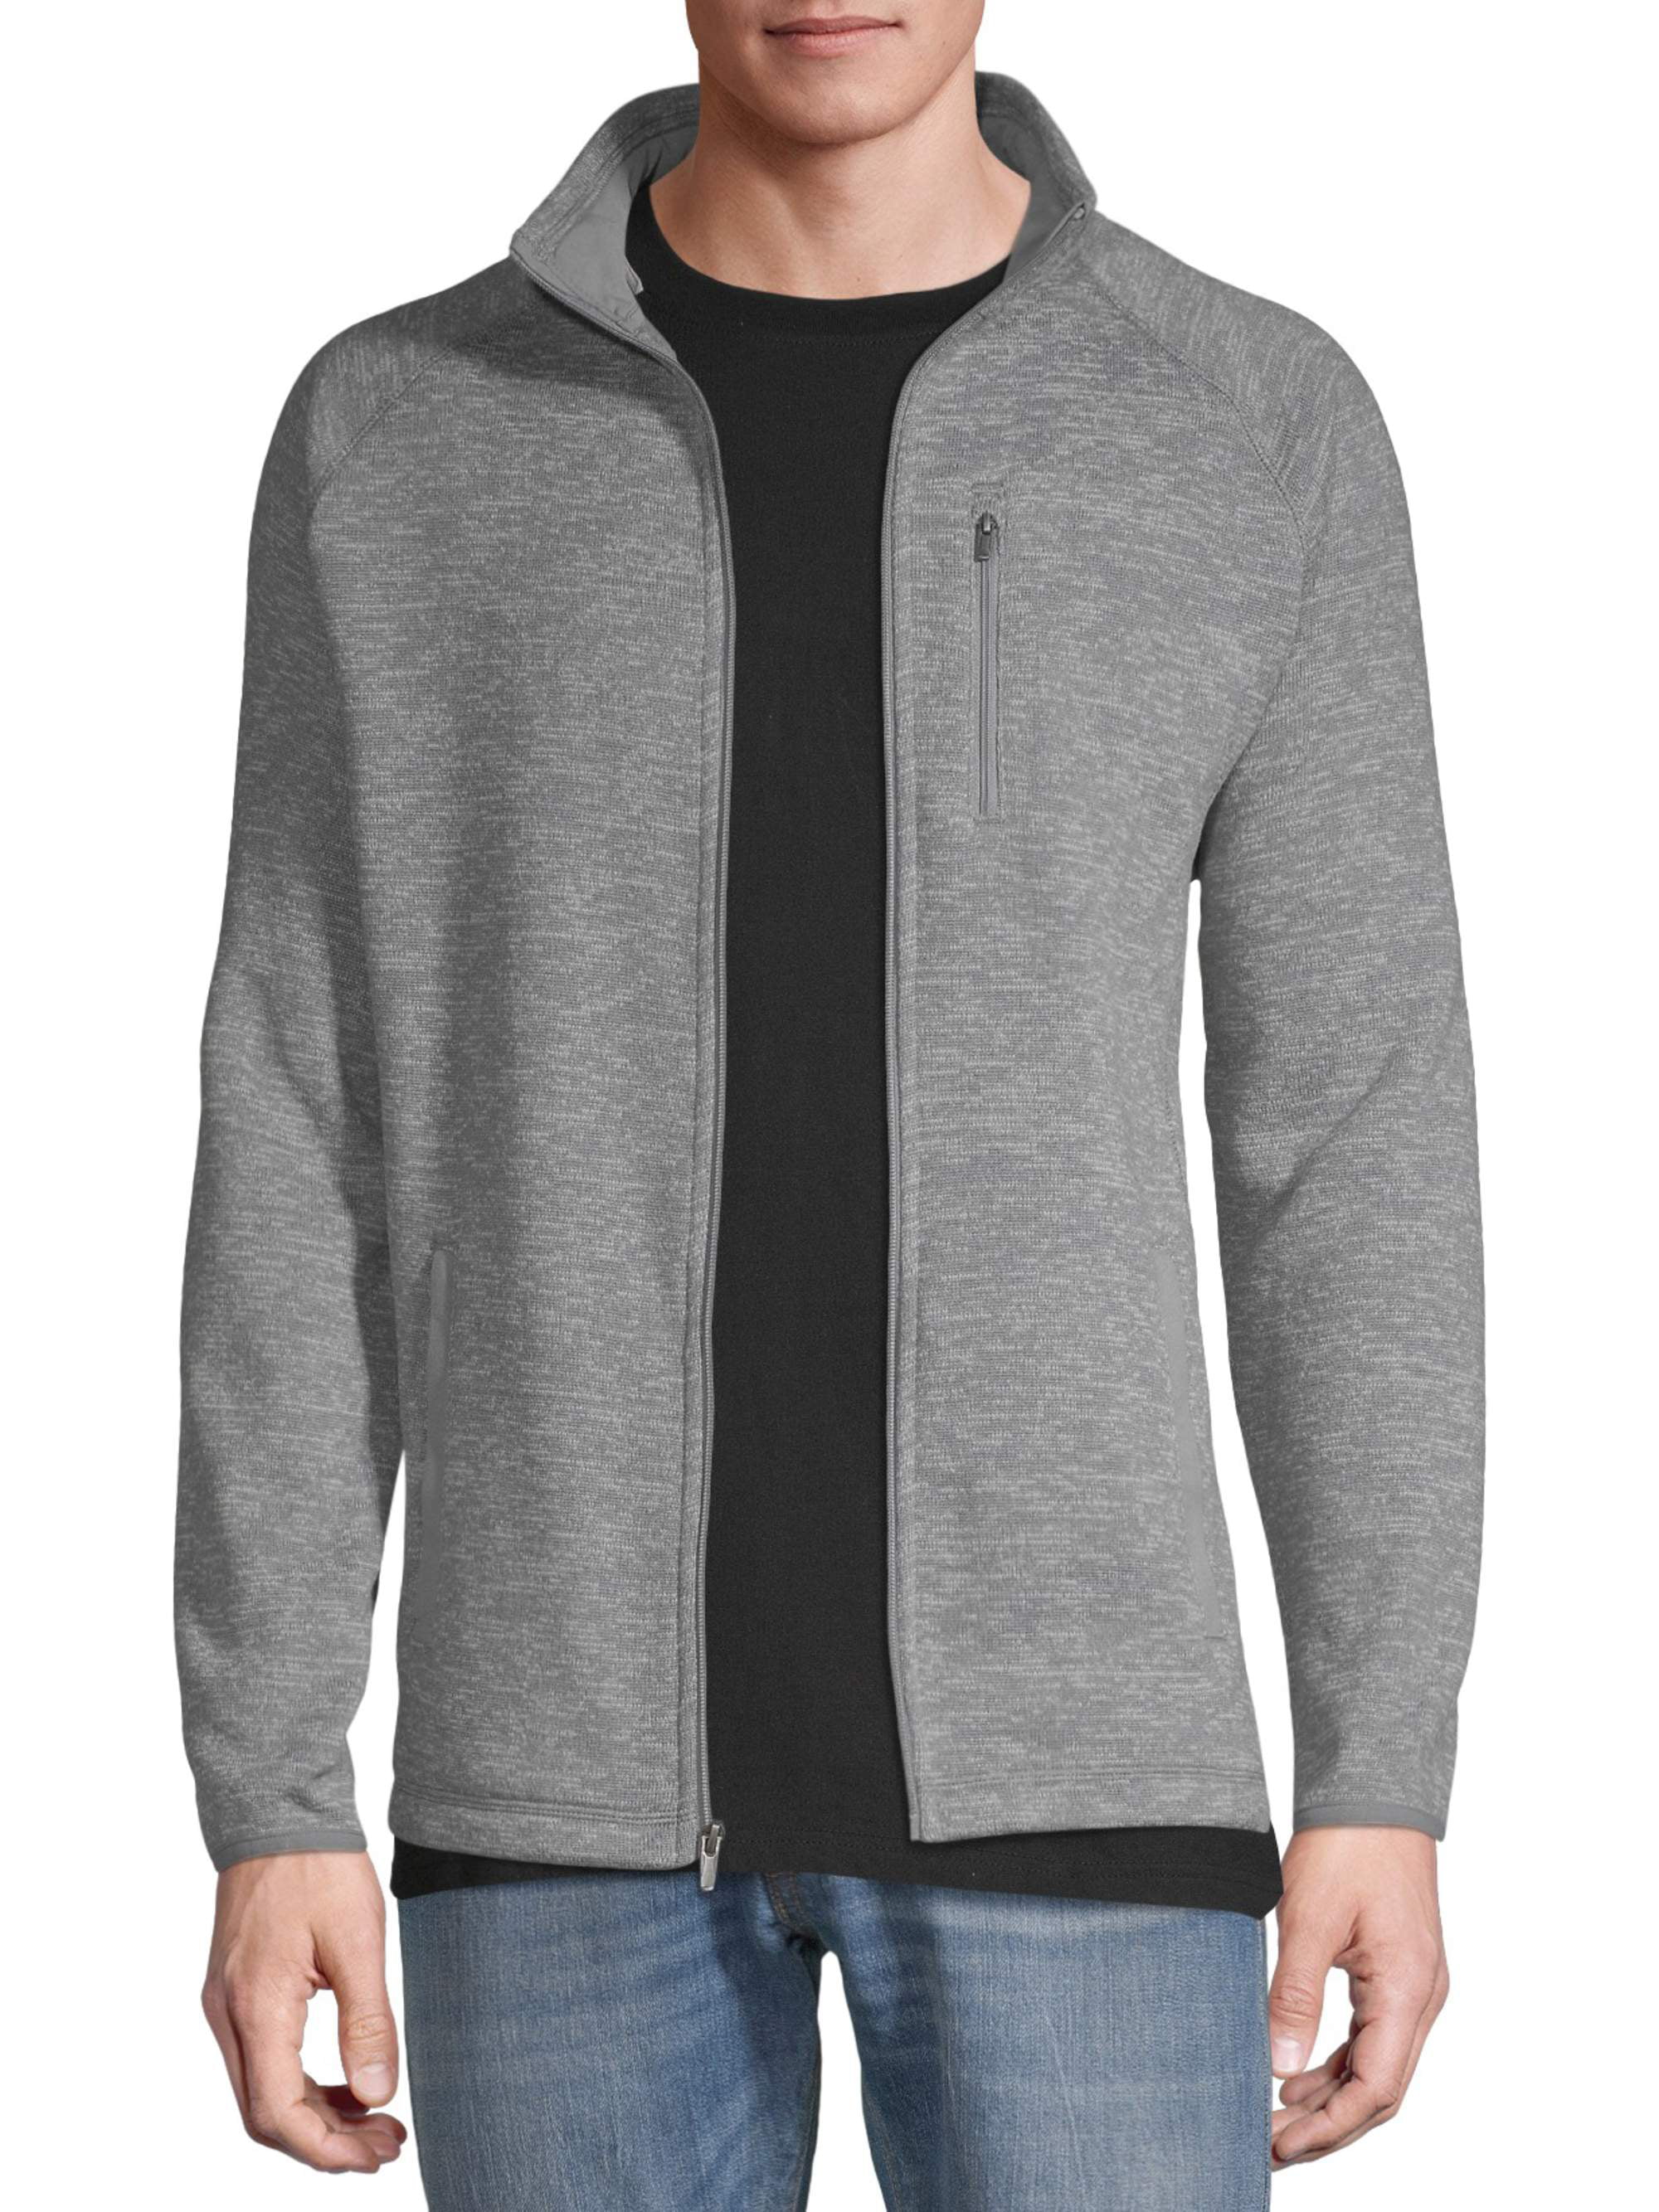 George Men's Full-Zip Sweater Fleece, Up to Size 5XL - Walmart.com